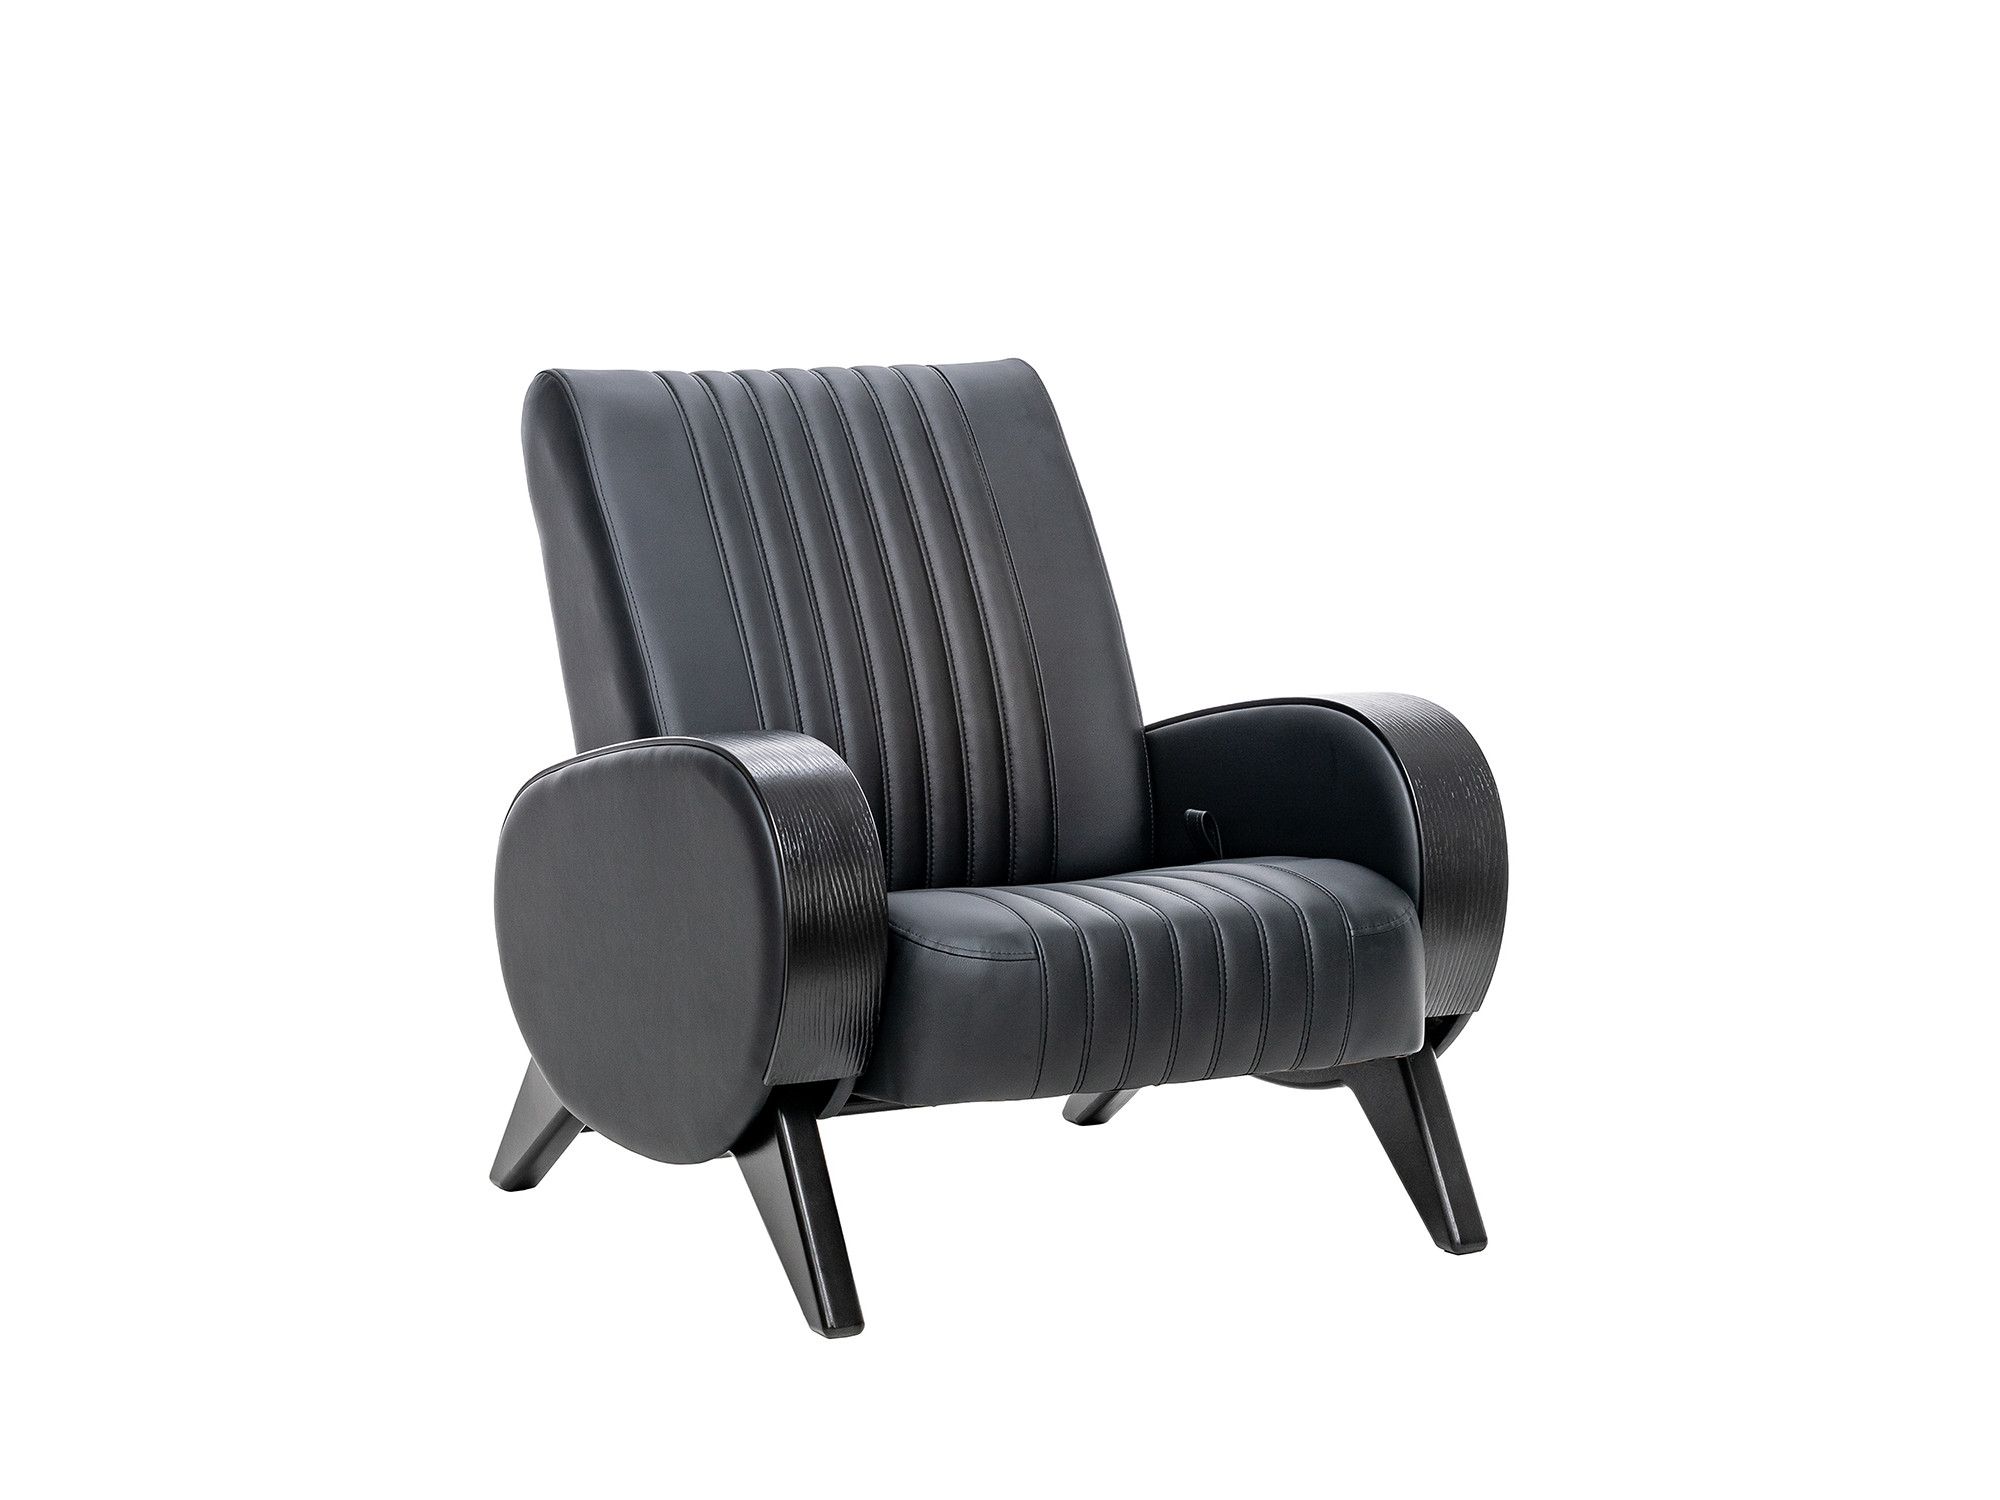 Кресло-глайдер Персона Люкс MebelVia Madryt 9100, Экокожа, покрыта эмалью, Берёзовая фанера кресло глайдер модель 68 mebelvia maxx 235 ткань велюр покрыта эмалью берёзовая фанера